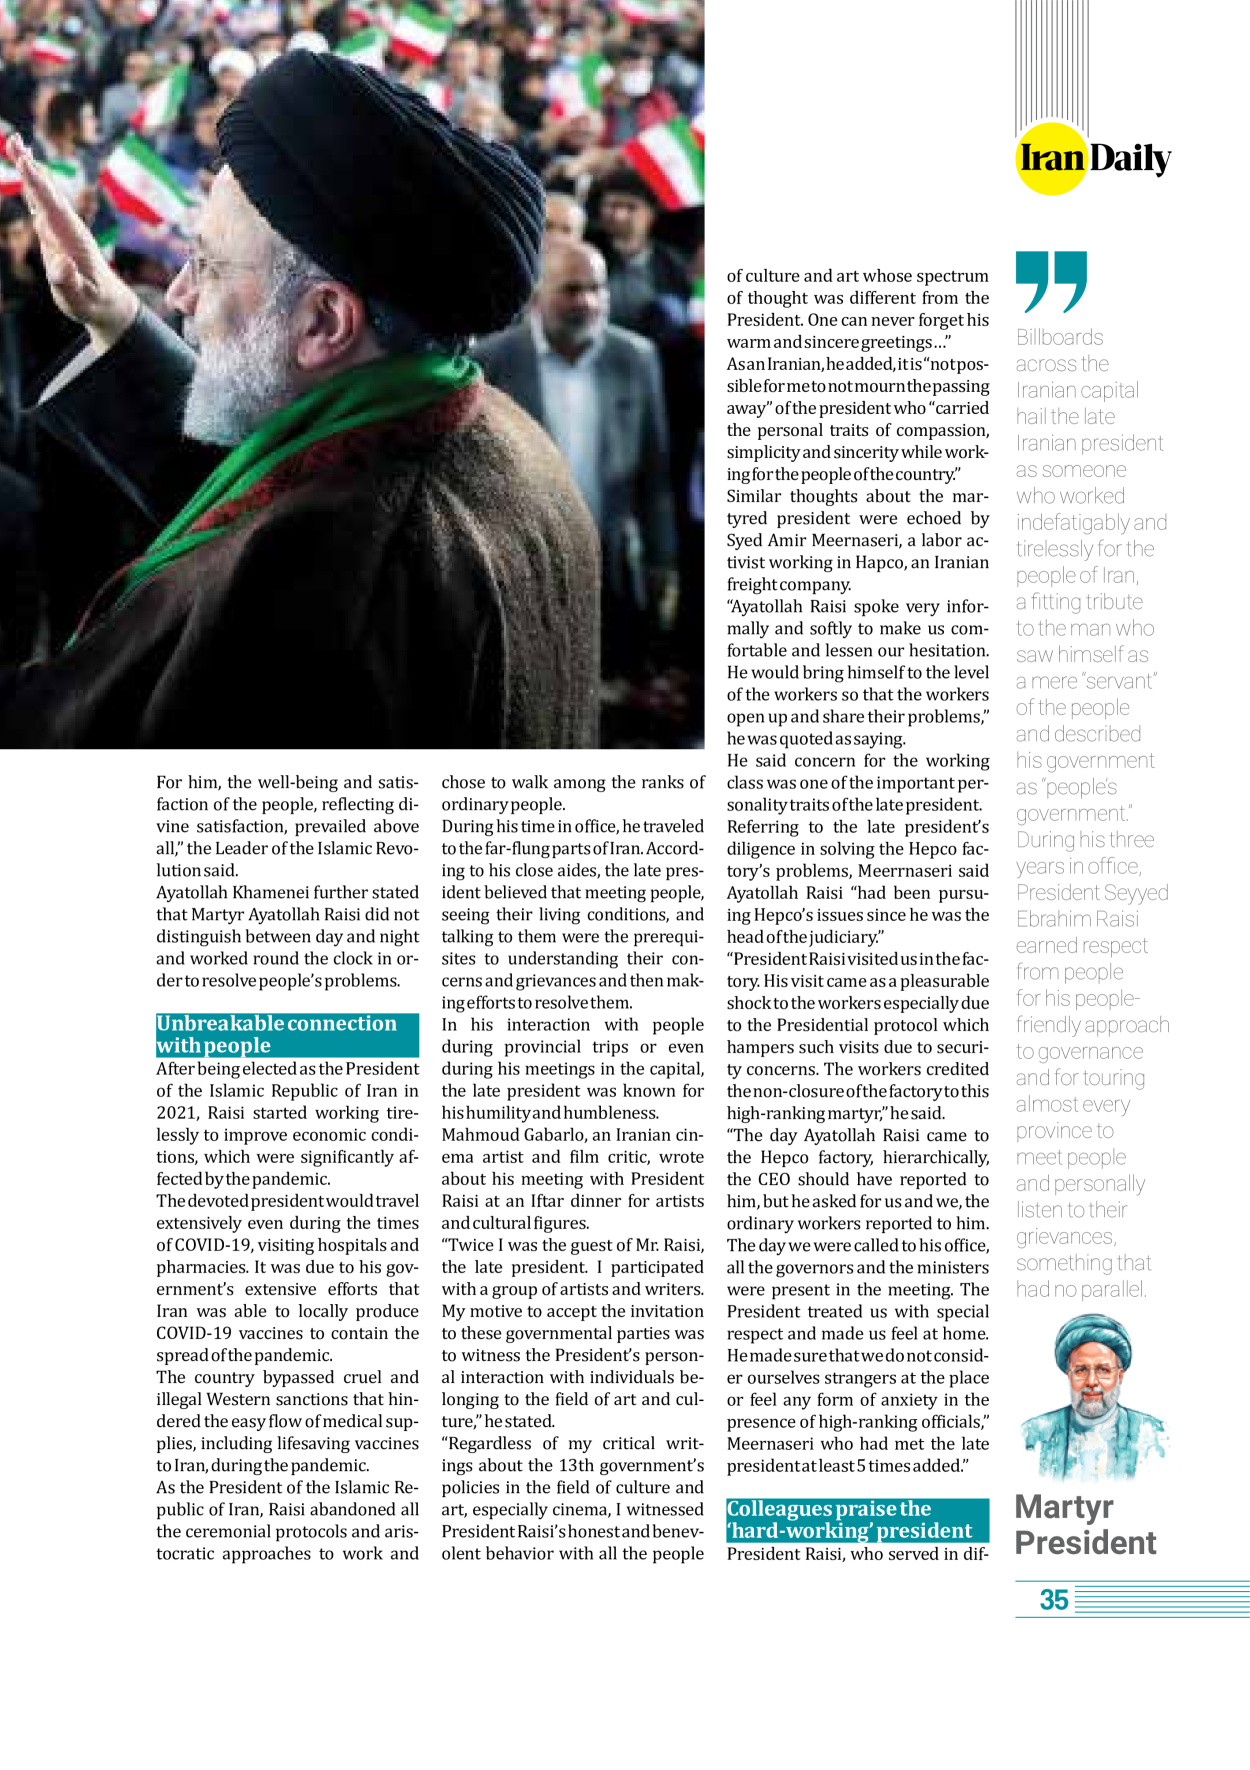 روزنامه ایران - ویژه نامه وِزه نامه چهلم شهید رییسی( انگلیسی) - ۱۷ تیر ۱۴۰۳ - صفحه ۳۵